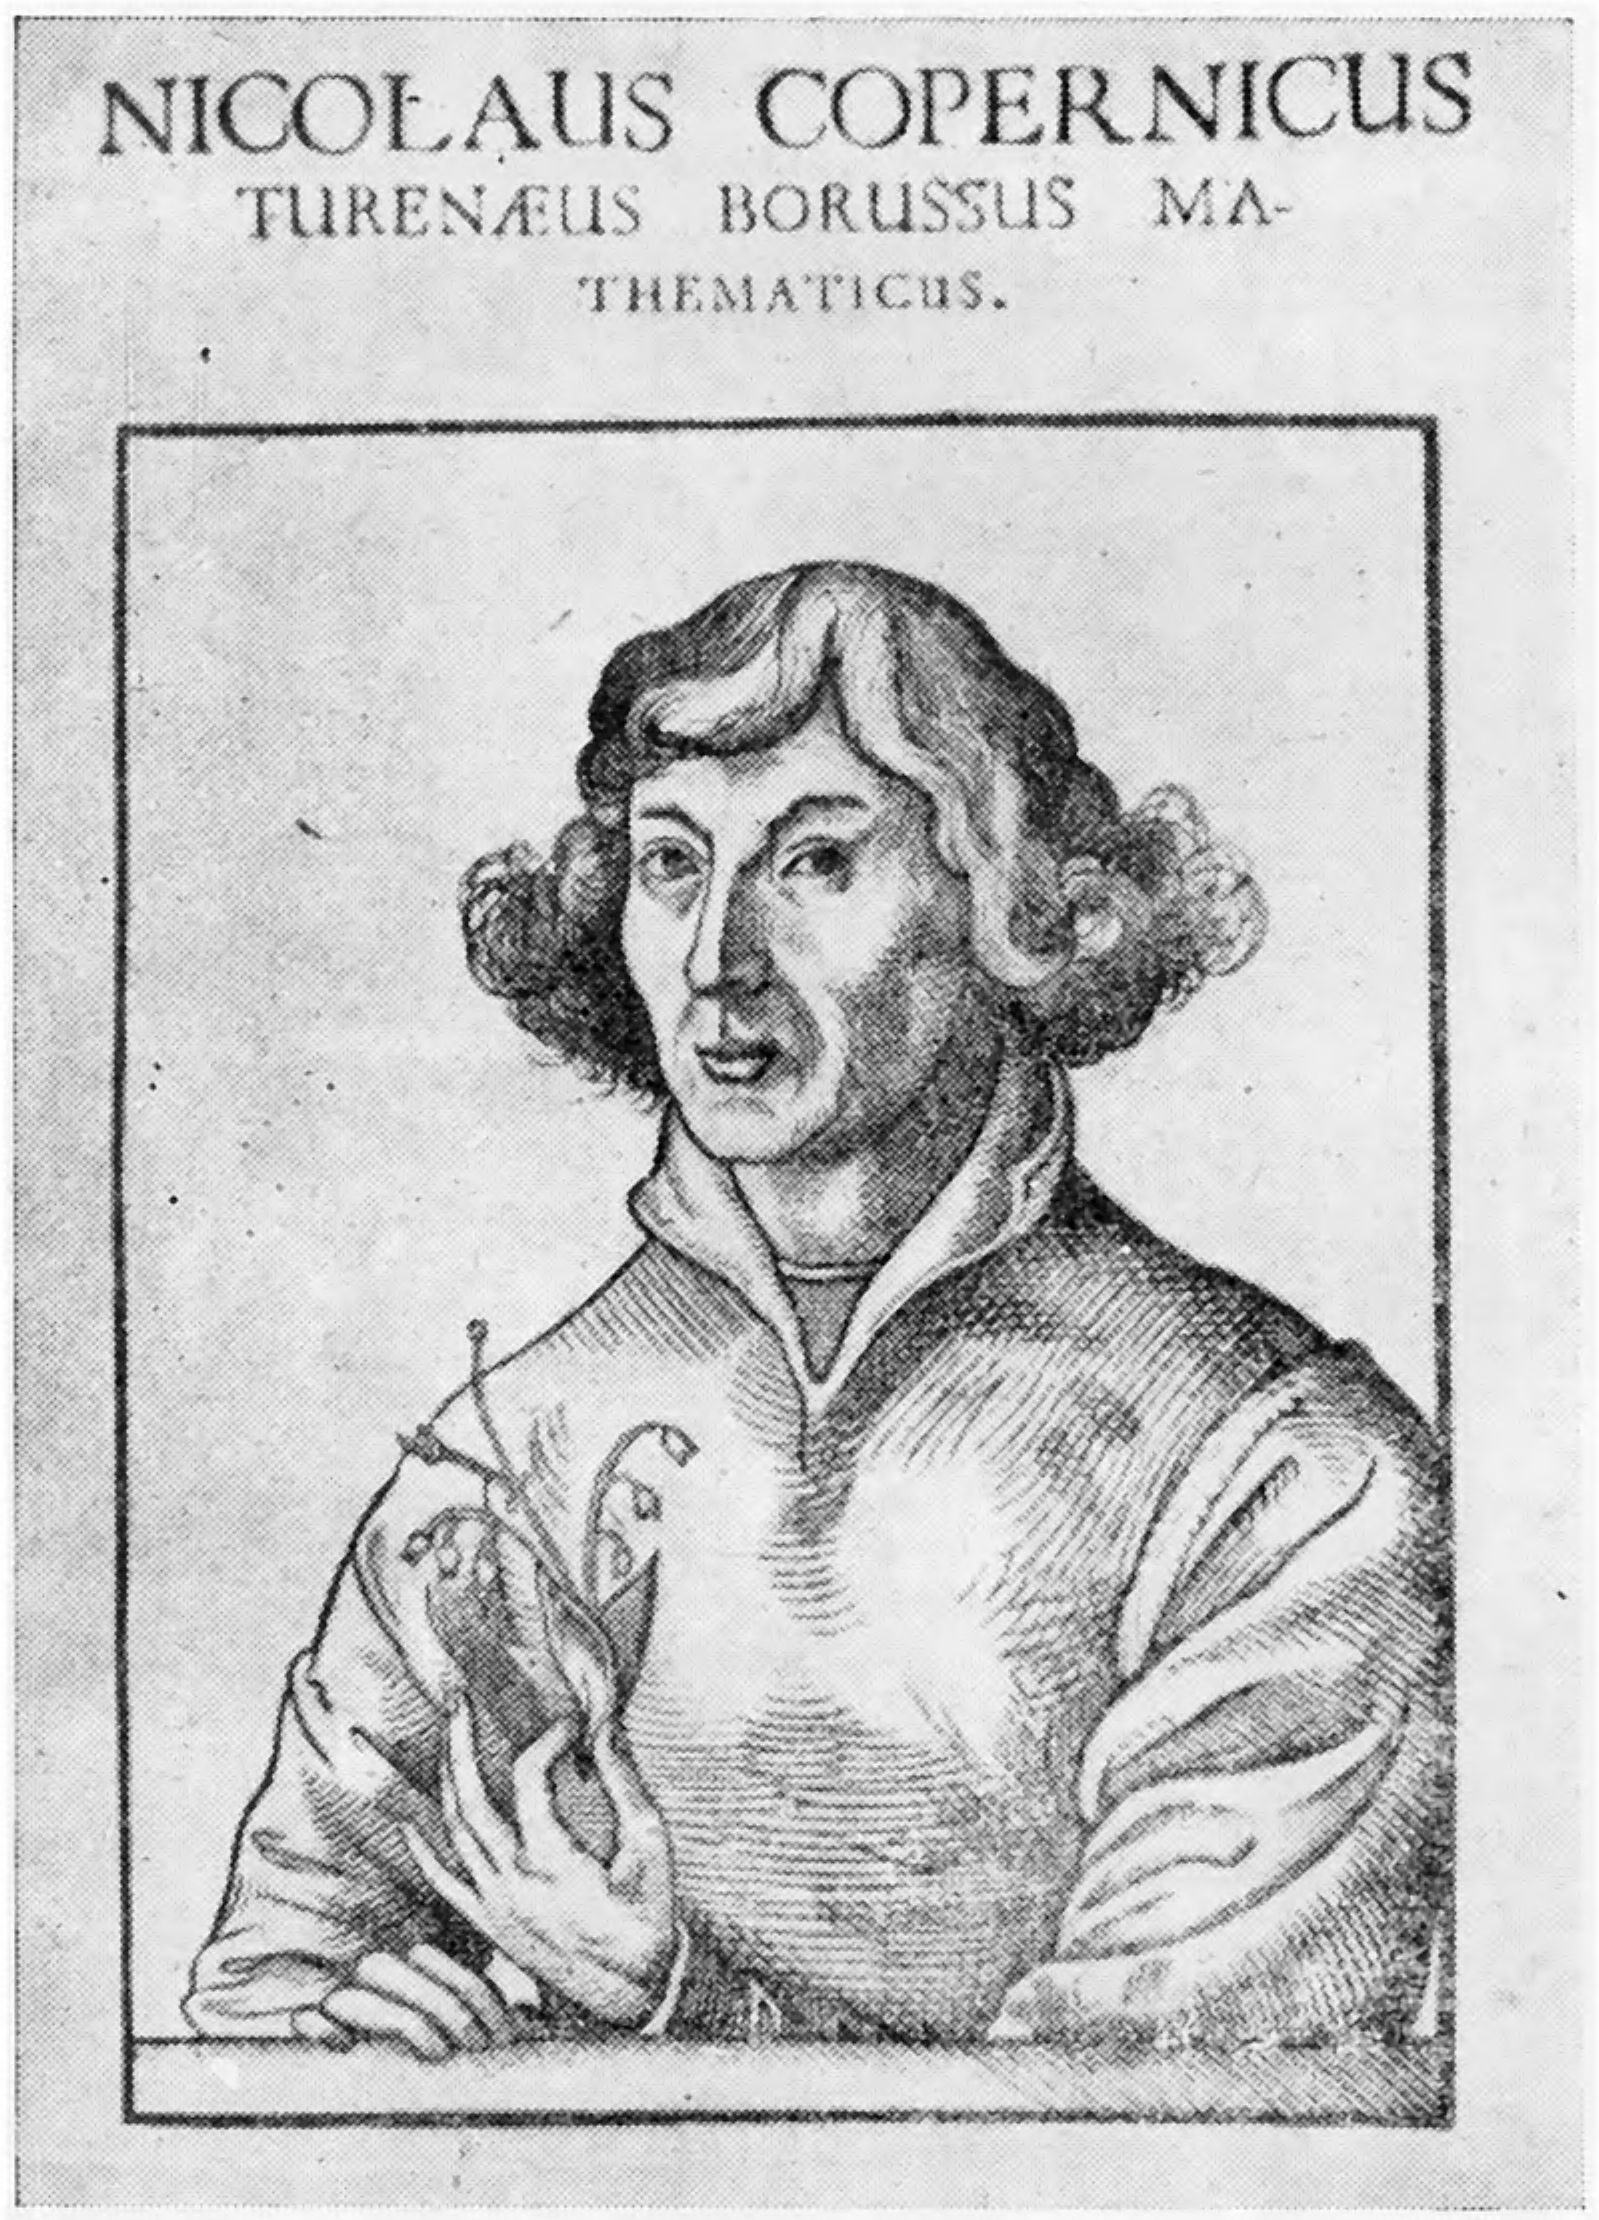 Николай Коперник. Так называемая кауфманновская гравюра на дереве из книги Рейснера, вышедшей в Вюртемберге около 1600 г.